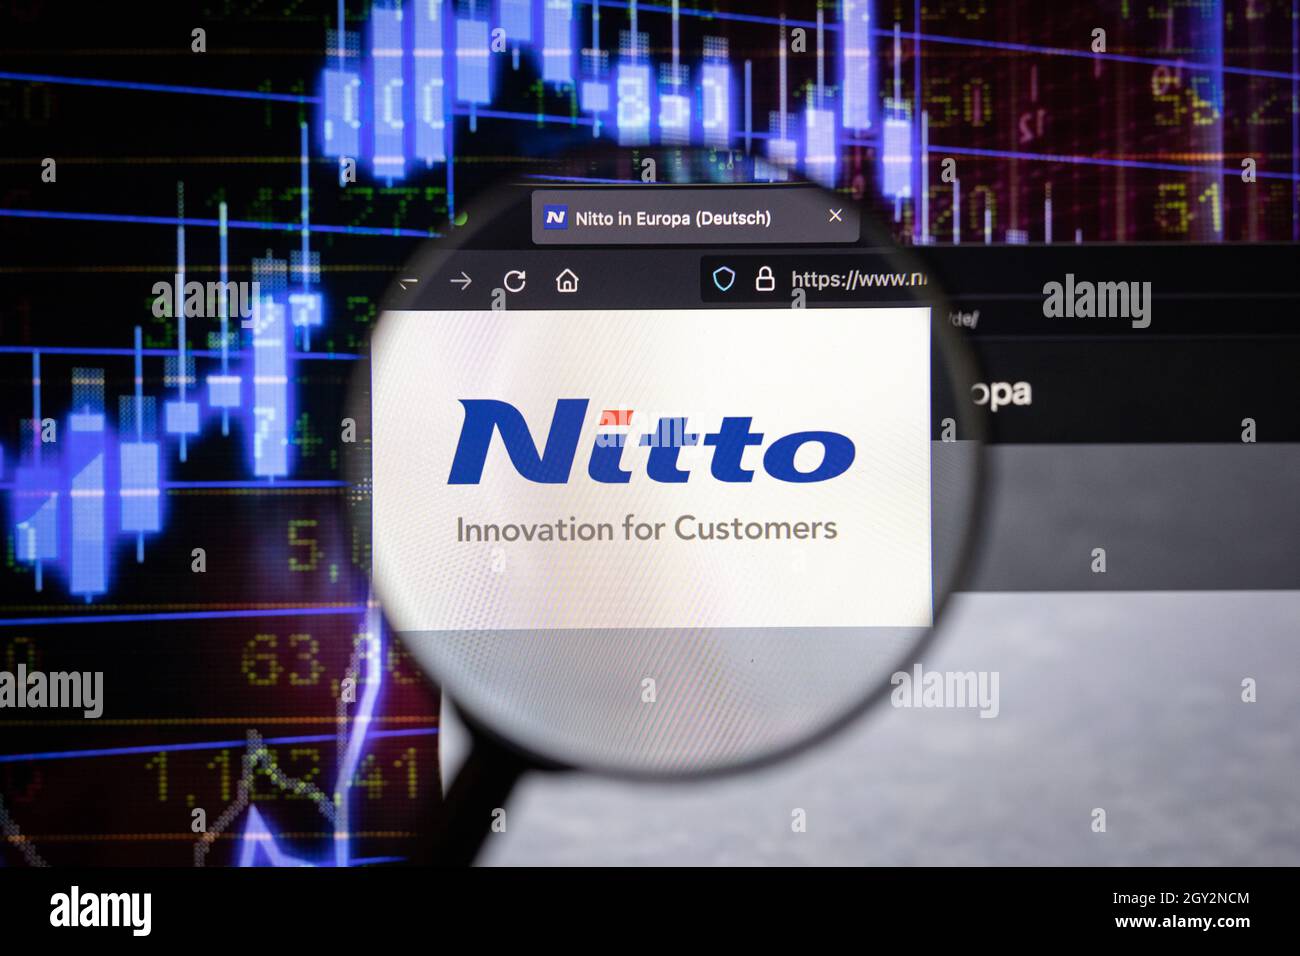 Le logo de la société Nitto sur un site web avec des développements flous du marché boursier en arrière-plan, vu sur un écran d'ordinateur à travers une loupe Banque D'Images